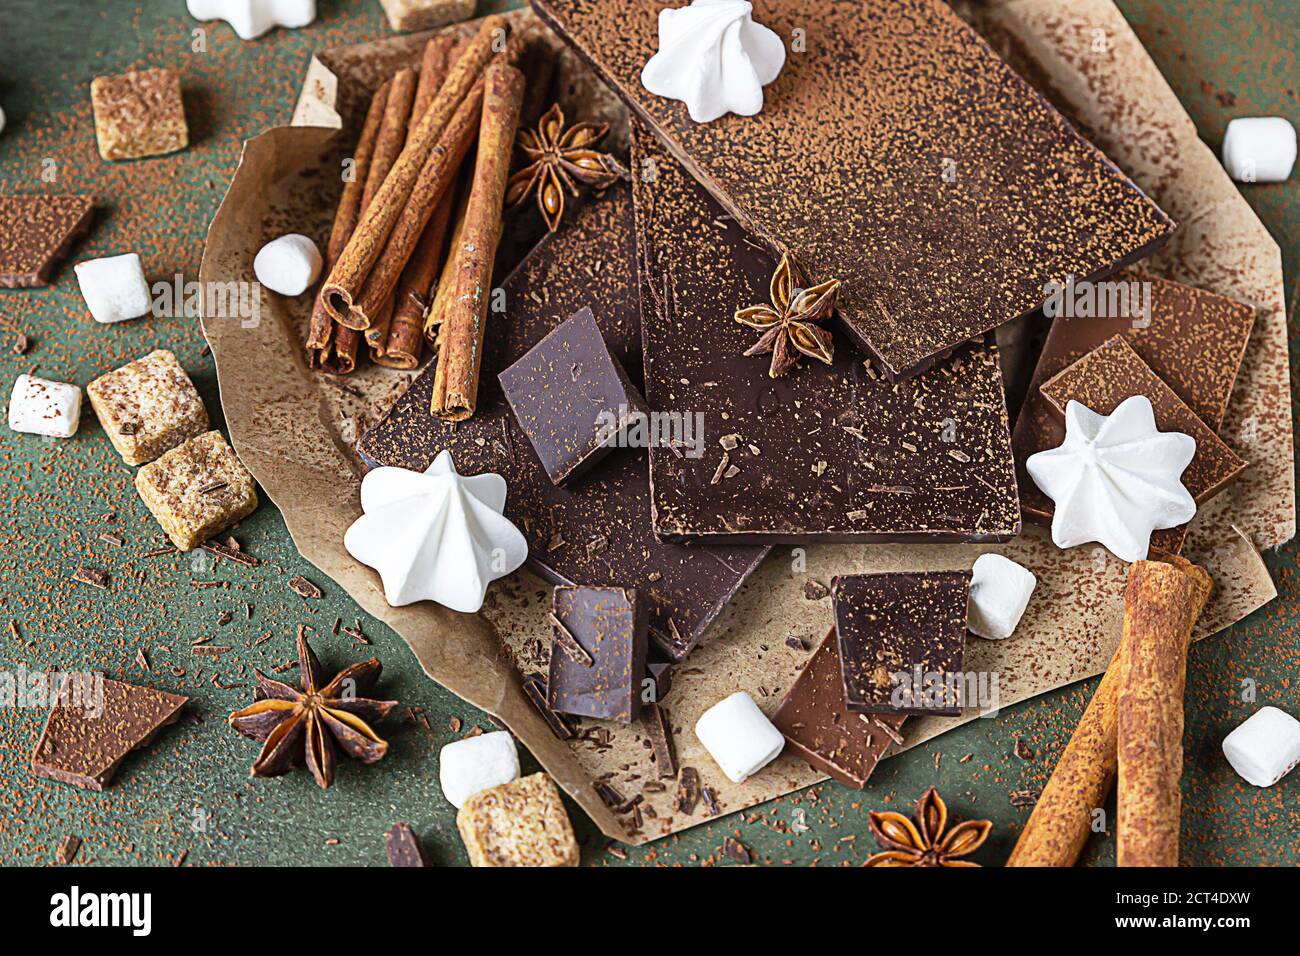 Dunkle und milchige Schokoriegel, Gewürze, brauner Zucker, Baiser und Marshmallow auf betontem Hintergrund. Sweet Food Foto Konzept. Stockfoto